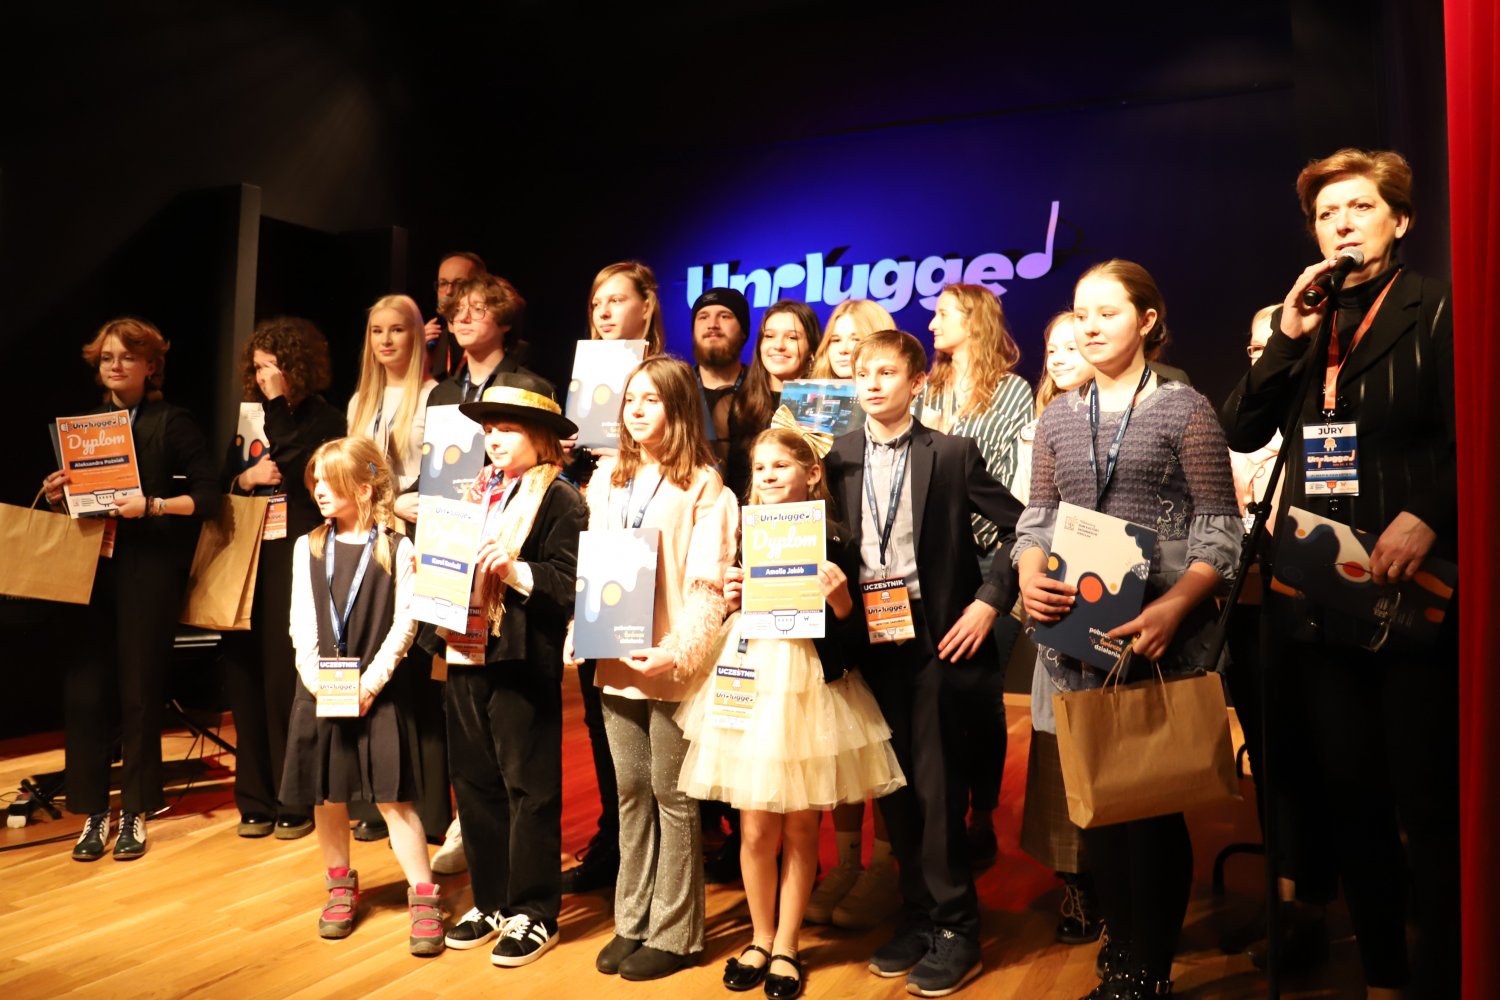 II Dolnośląski Konkurs Wokalny dla Dzieci i Młodzieży UNPLAGGEND